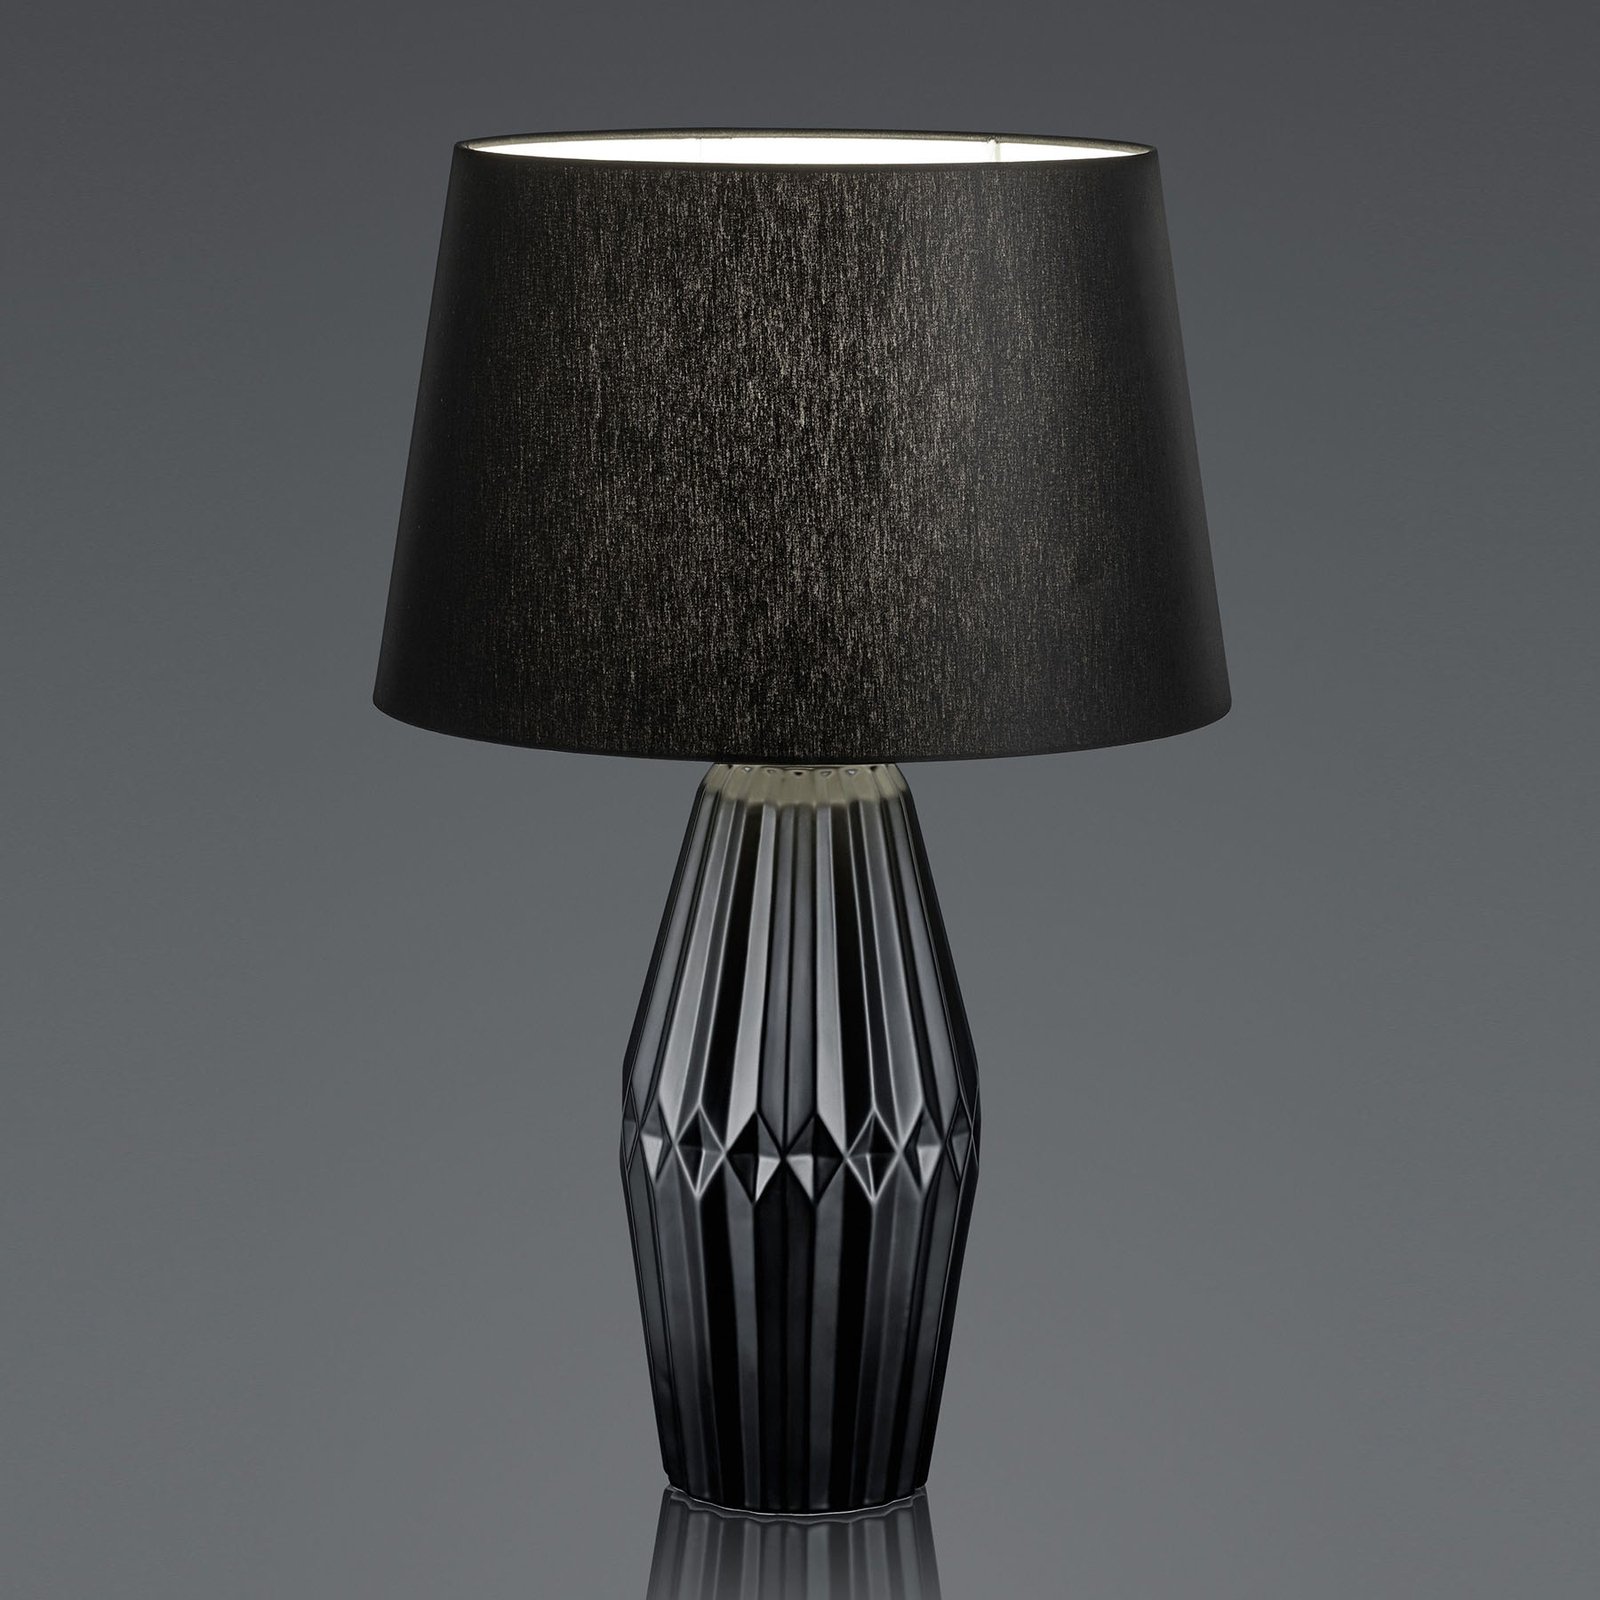 Kera table lamp, fabric lampshade, 58 cm